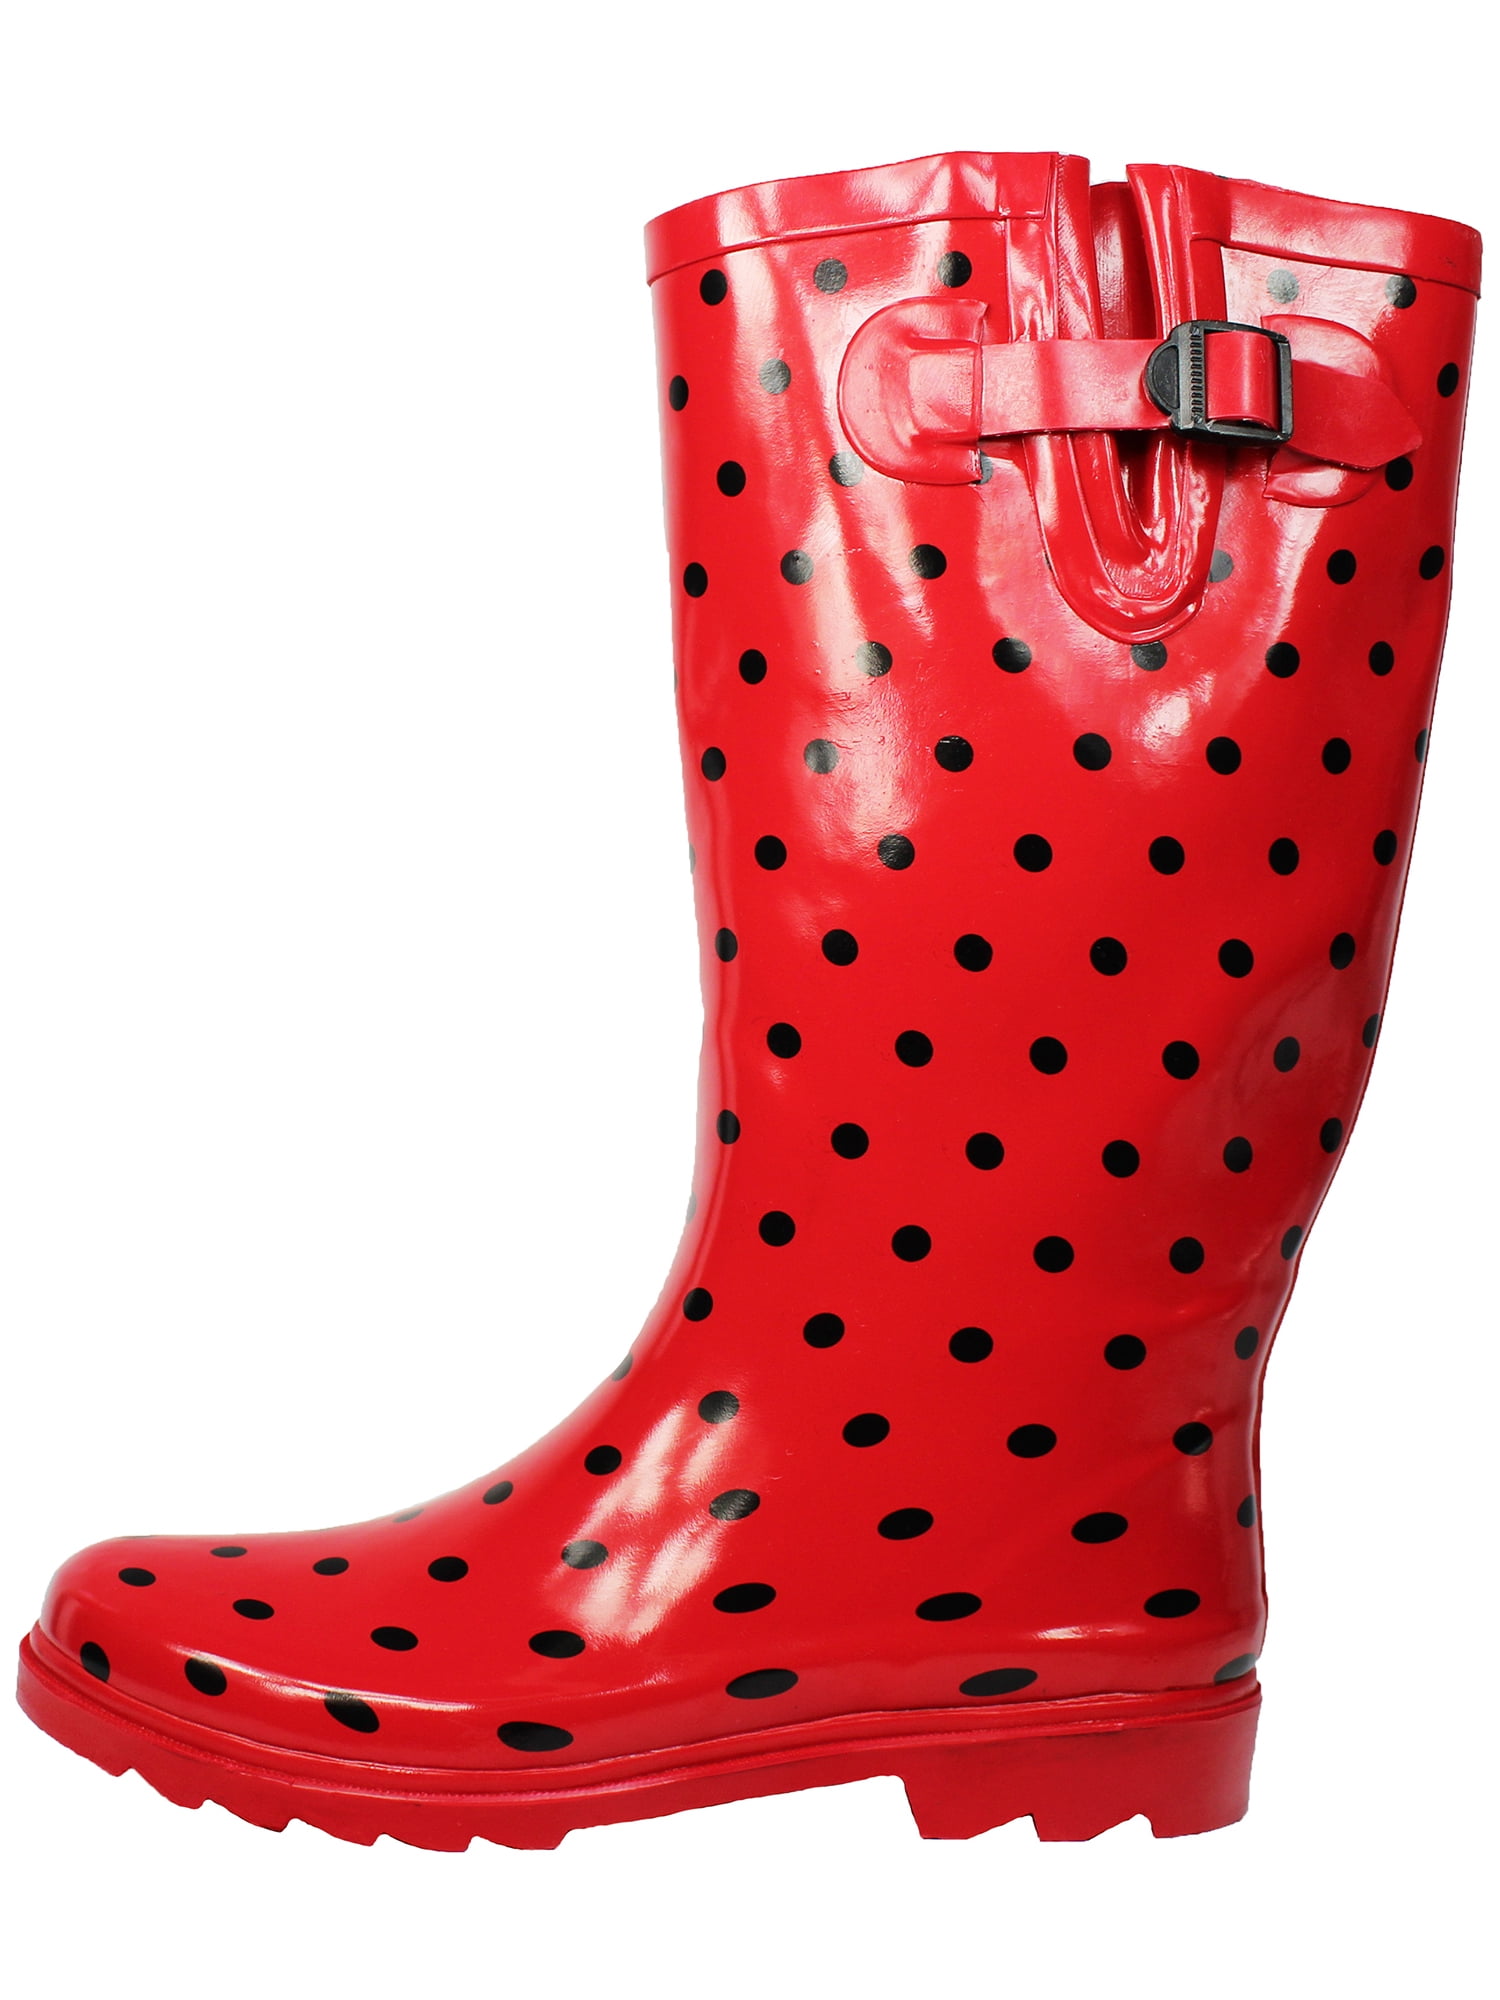 OwnShoe Cute Rain Boots for Women Waterproof Mid-Calf Rubber Rain Shoes ...